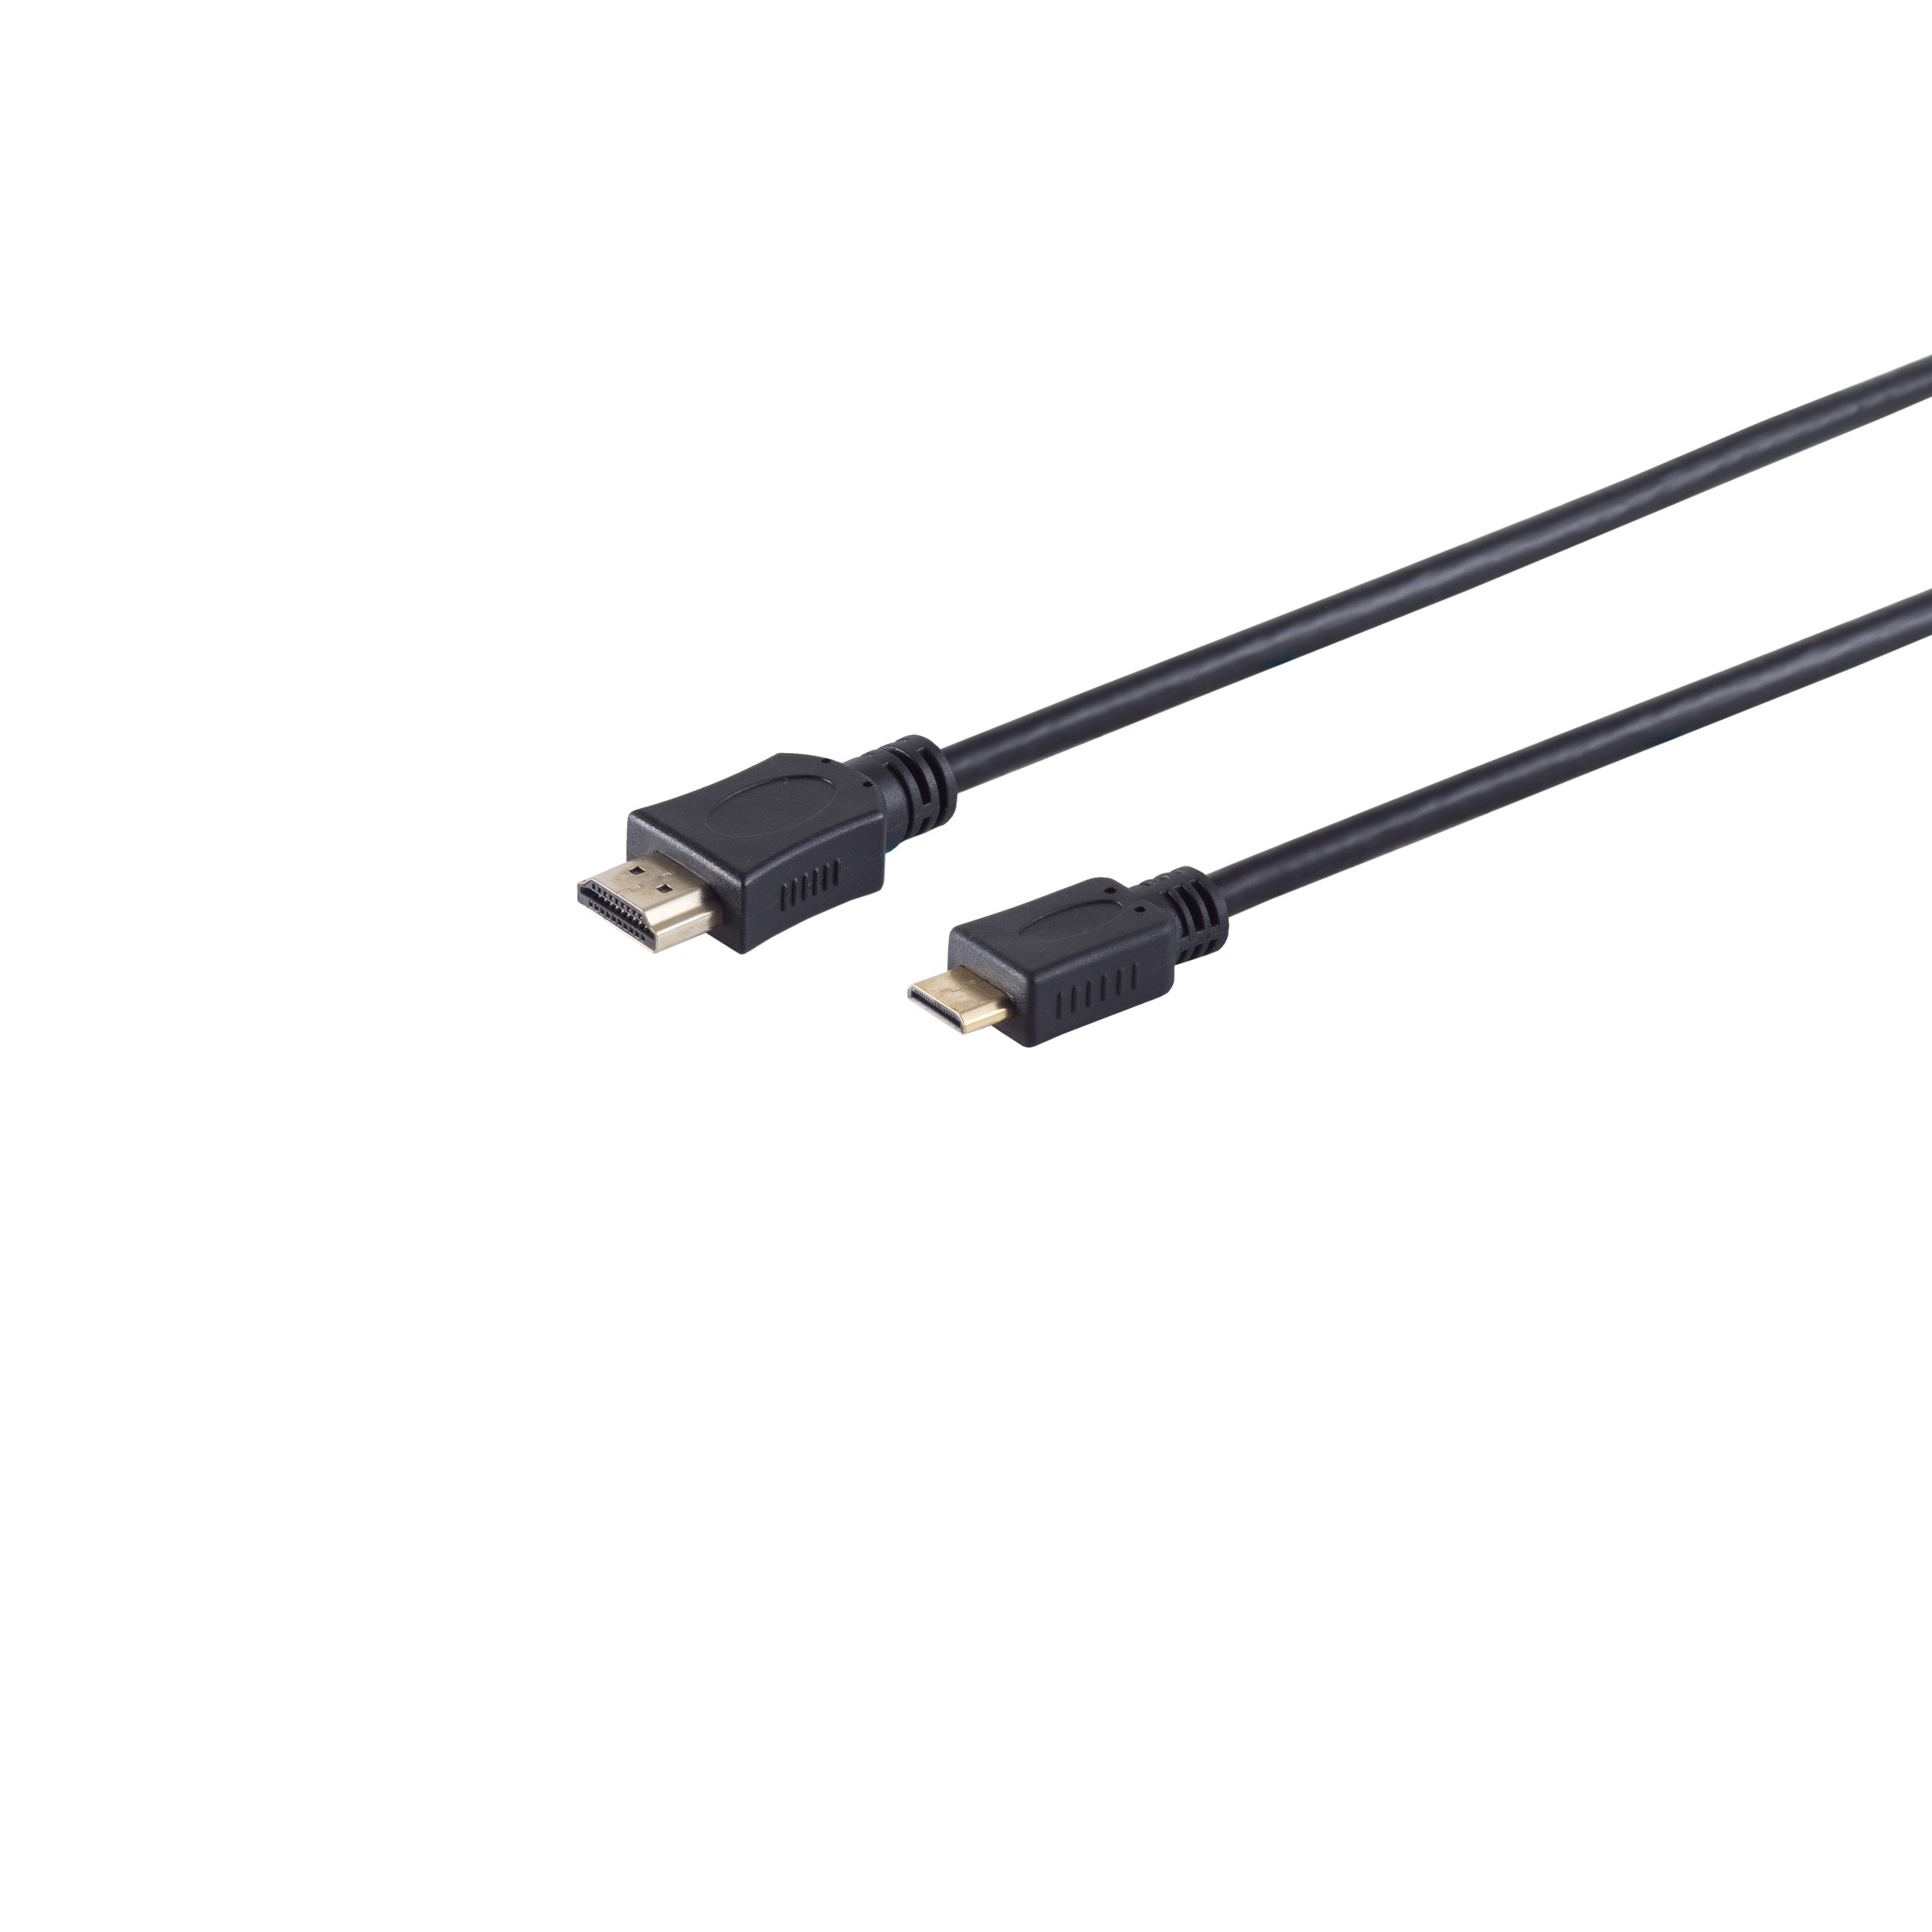 C-Stecker 3m / Kabel S/CONN HDMI MAXIMUM A-Stecker CONNECTIVITY HDMI verg. HDMI HEAC